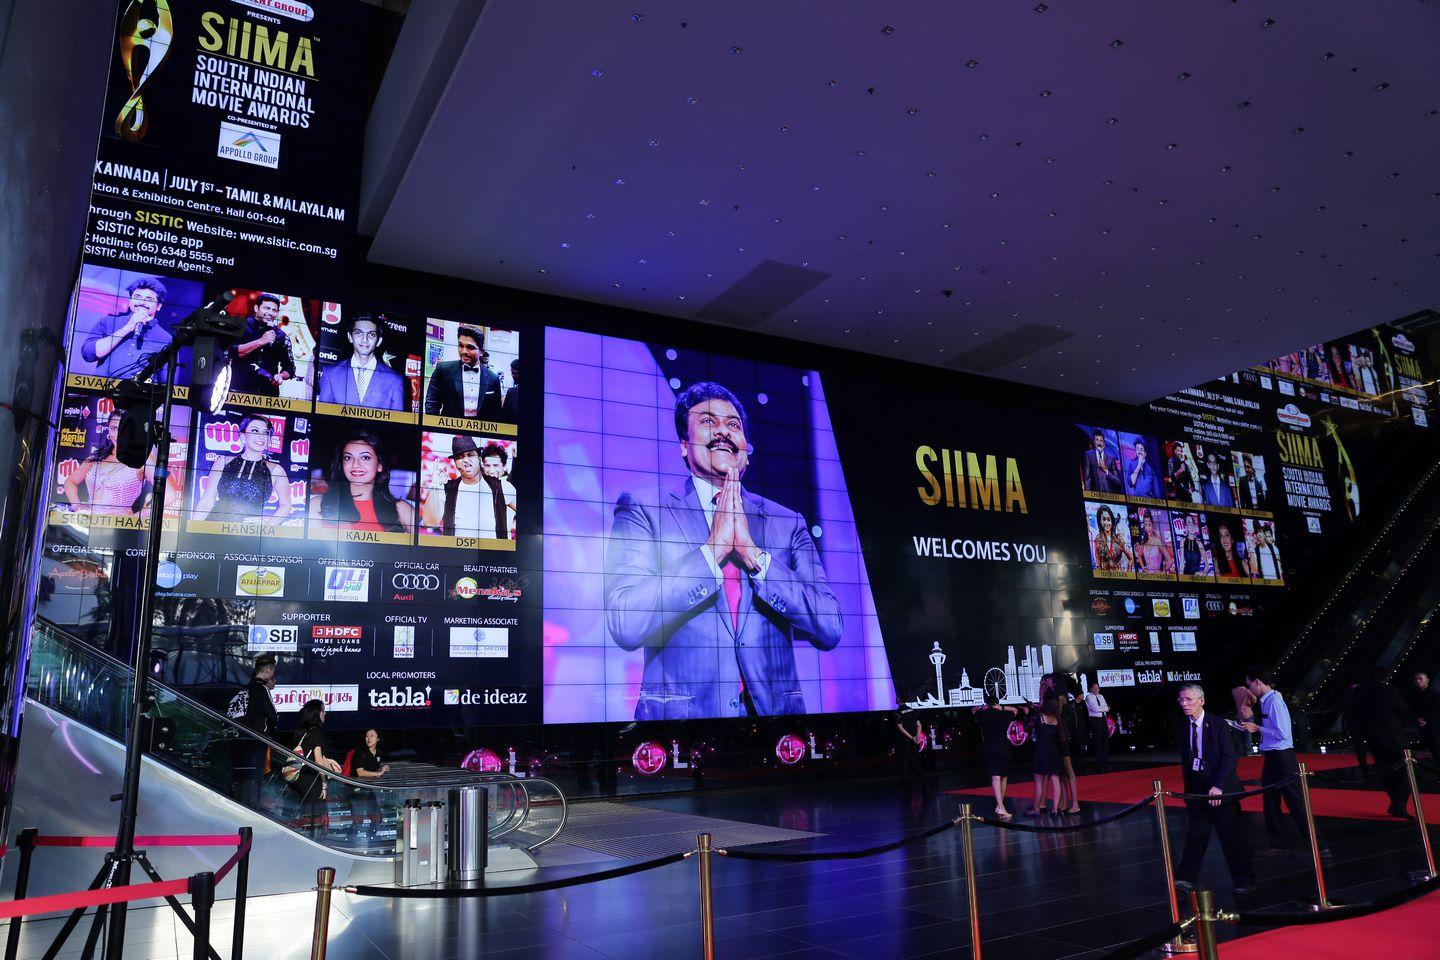 Siima Awards 2016 Images